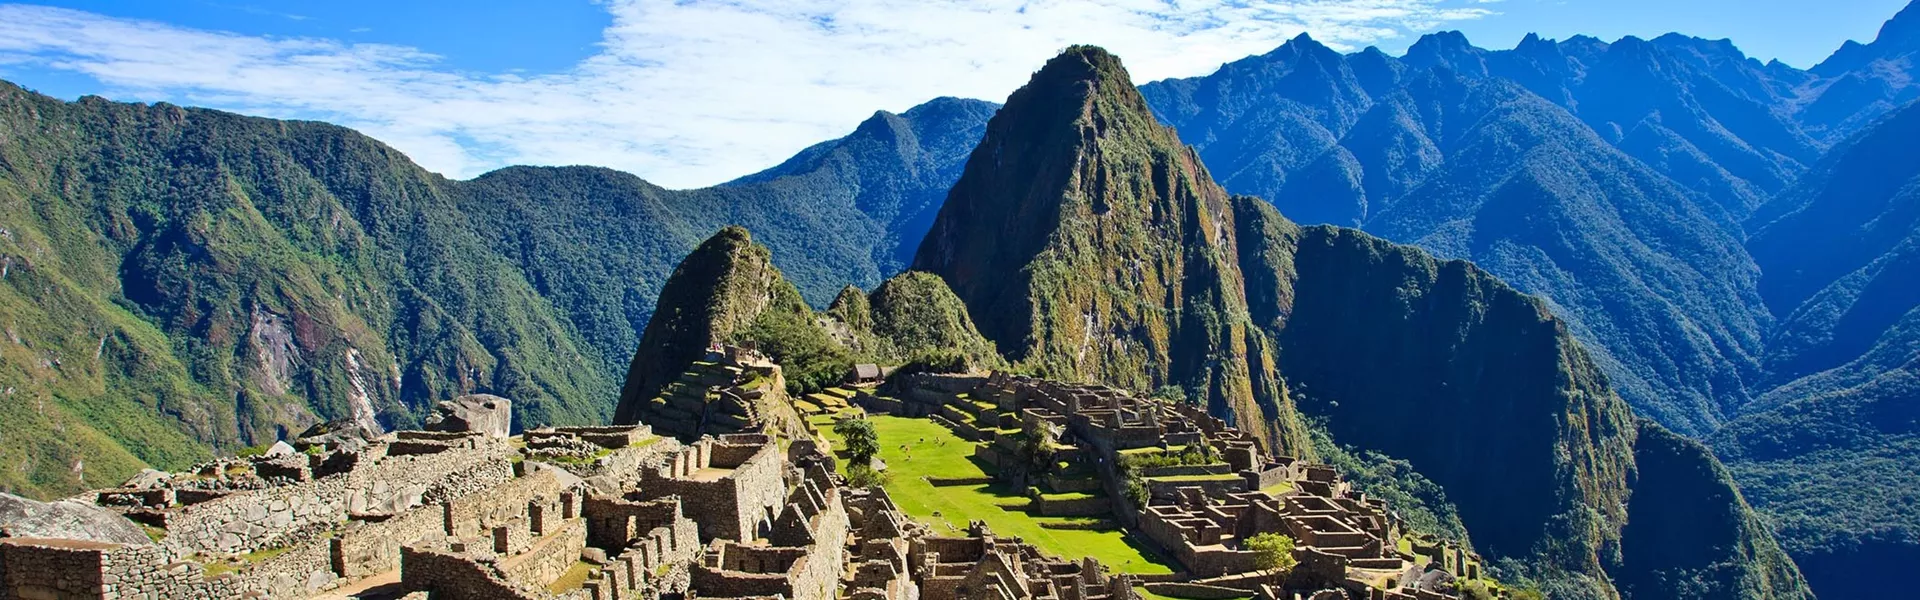 Landscape of Machu Picchu on sunny day